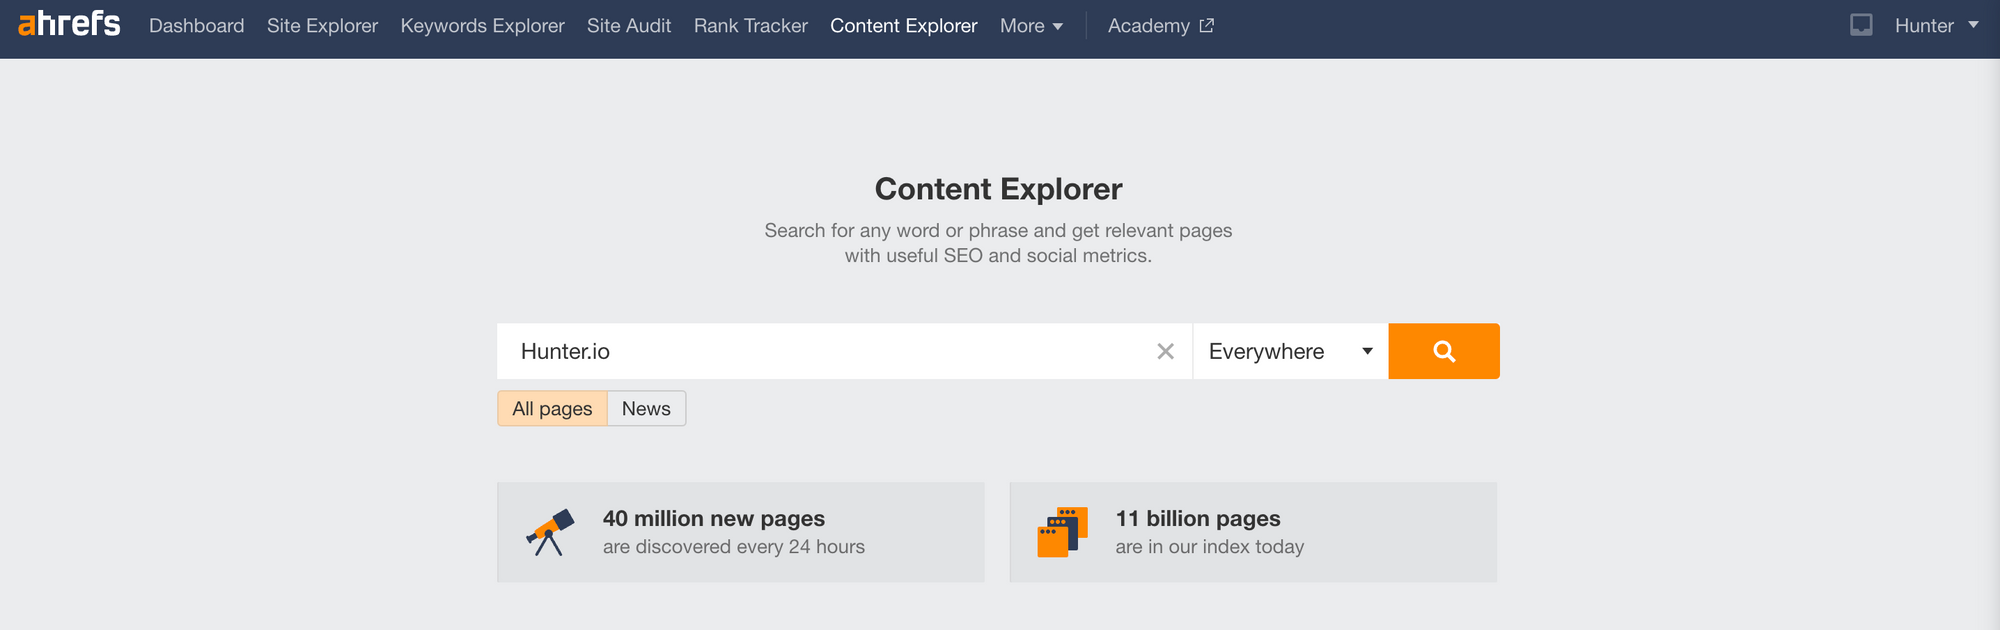 Ahrefs' Content Explorer tool